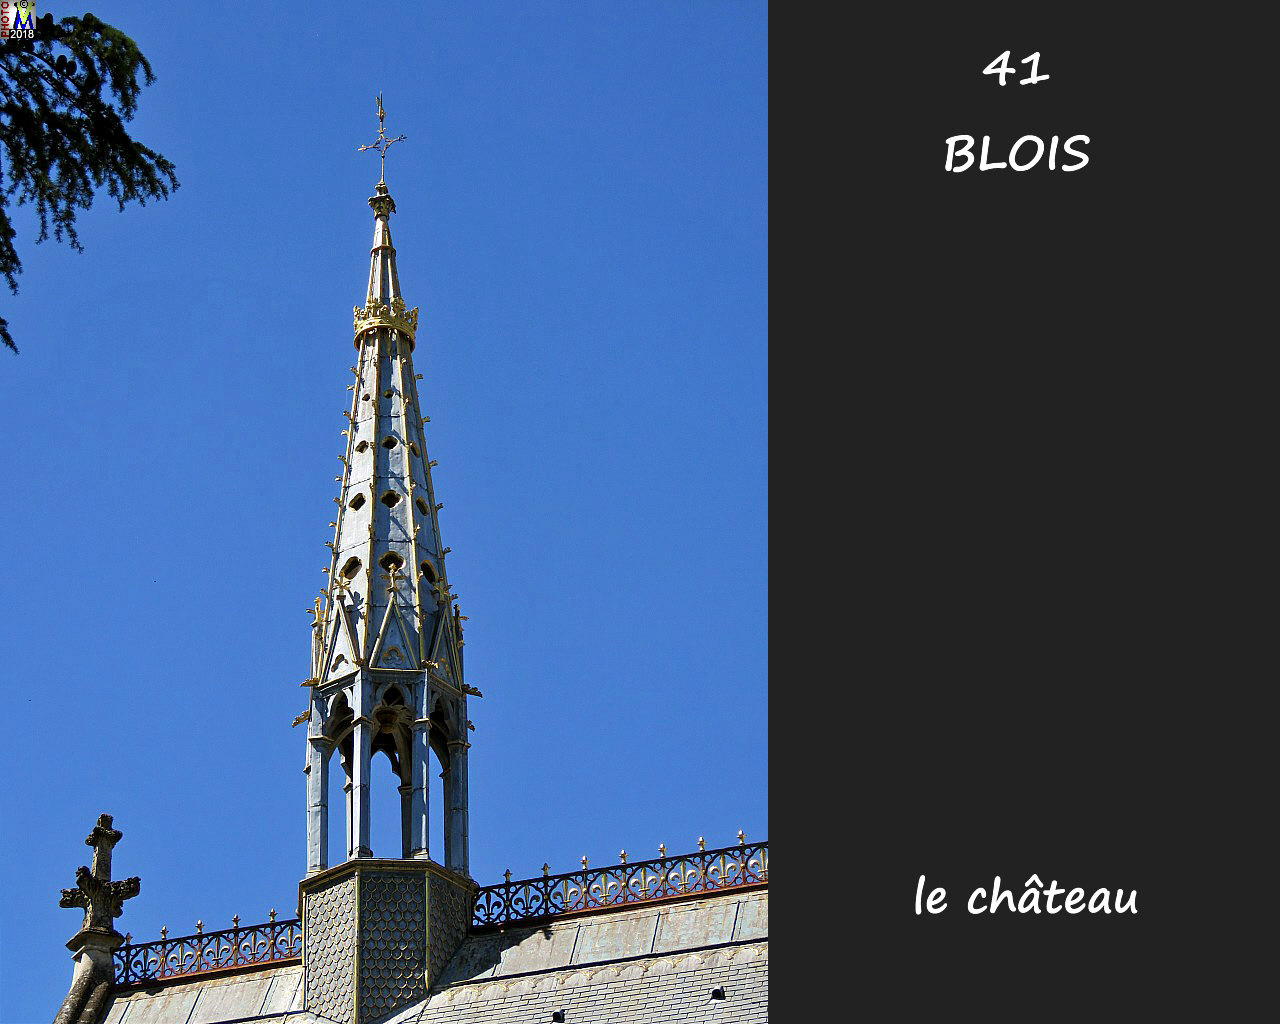 41BLOIS_chateau_192.jpg